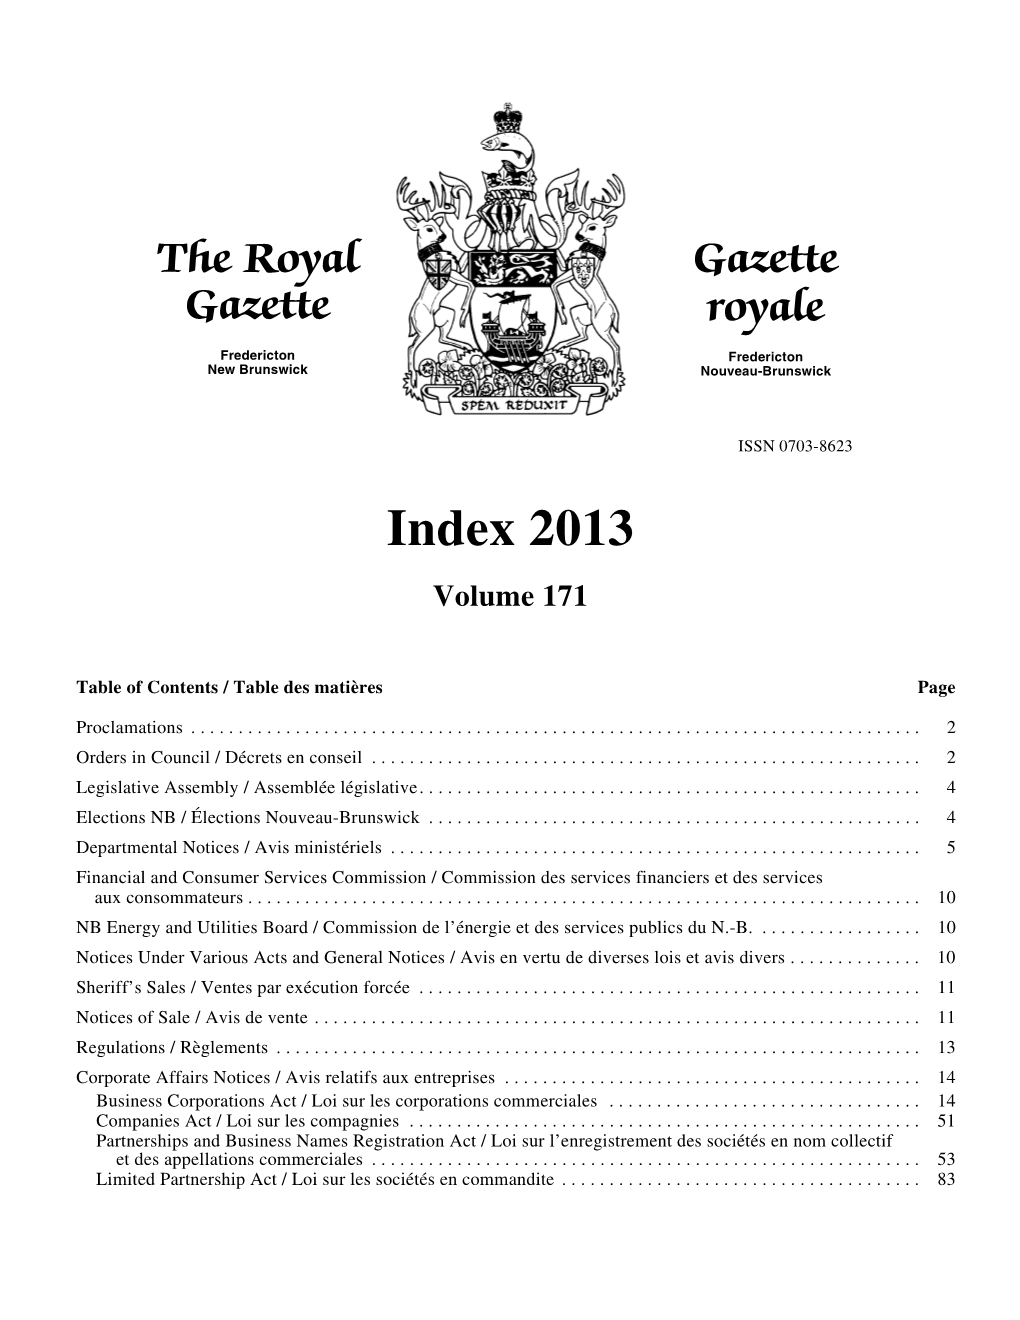 Index 2013 Volume 171